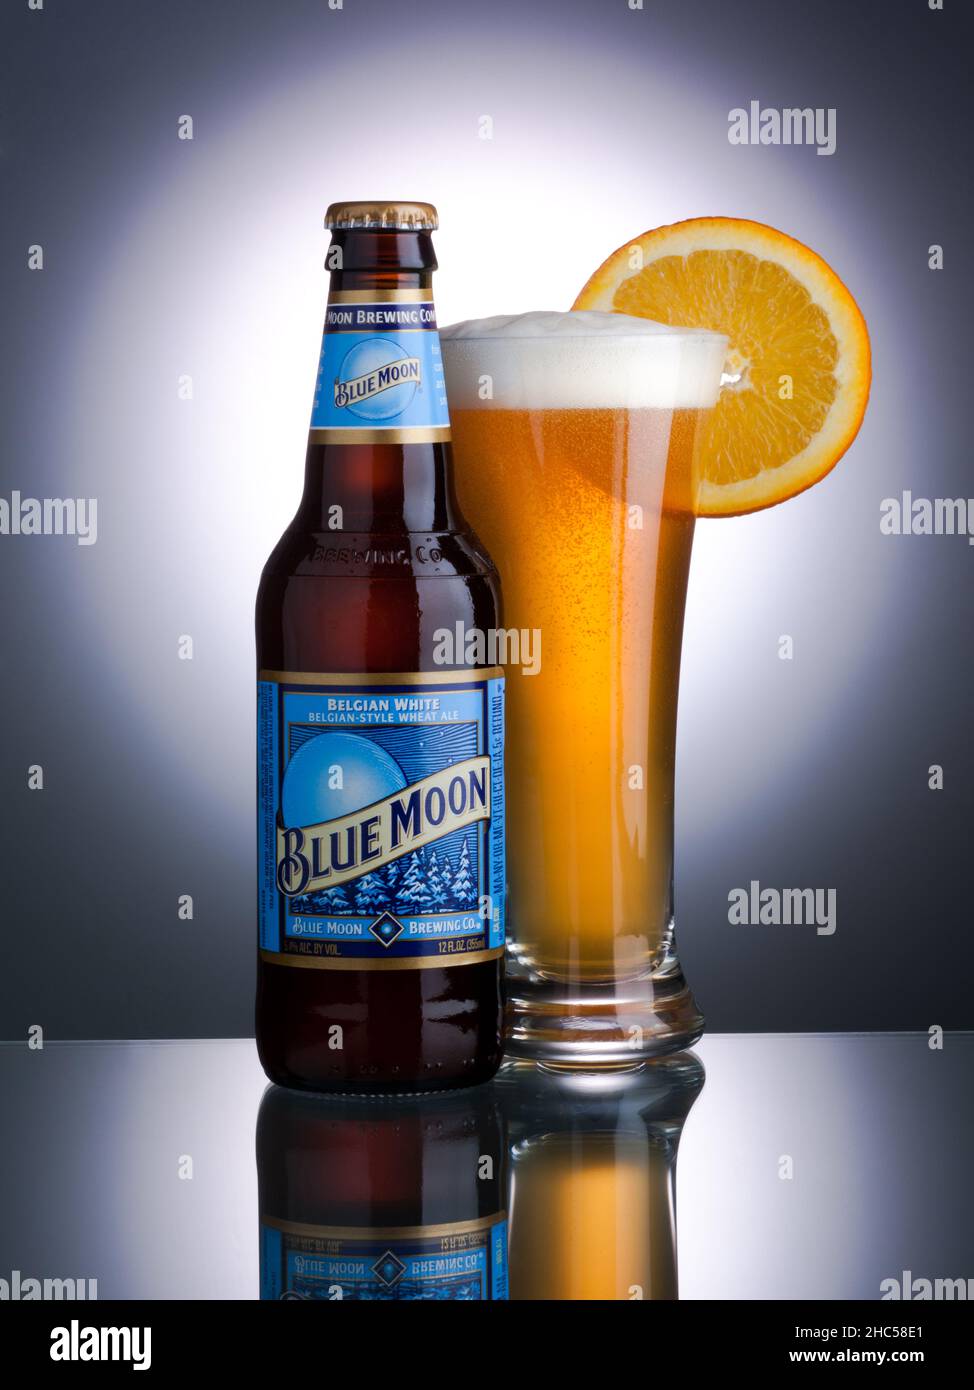 primer plano vertical de la botella de cerveza Blue Moon y un vaso completo de cerveza sobre una superficie reflectante. Foto de stock